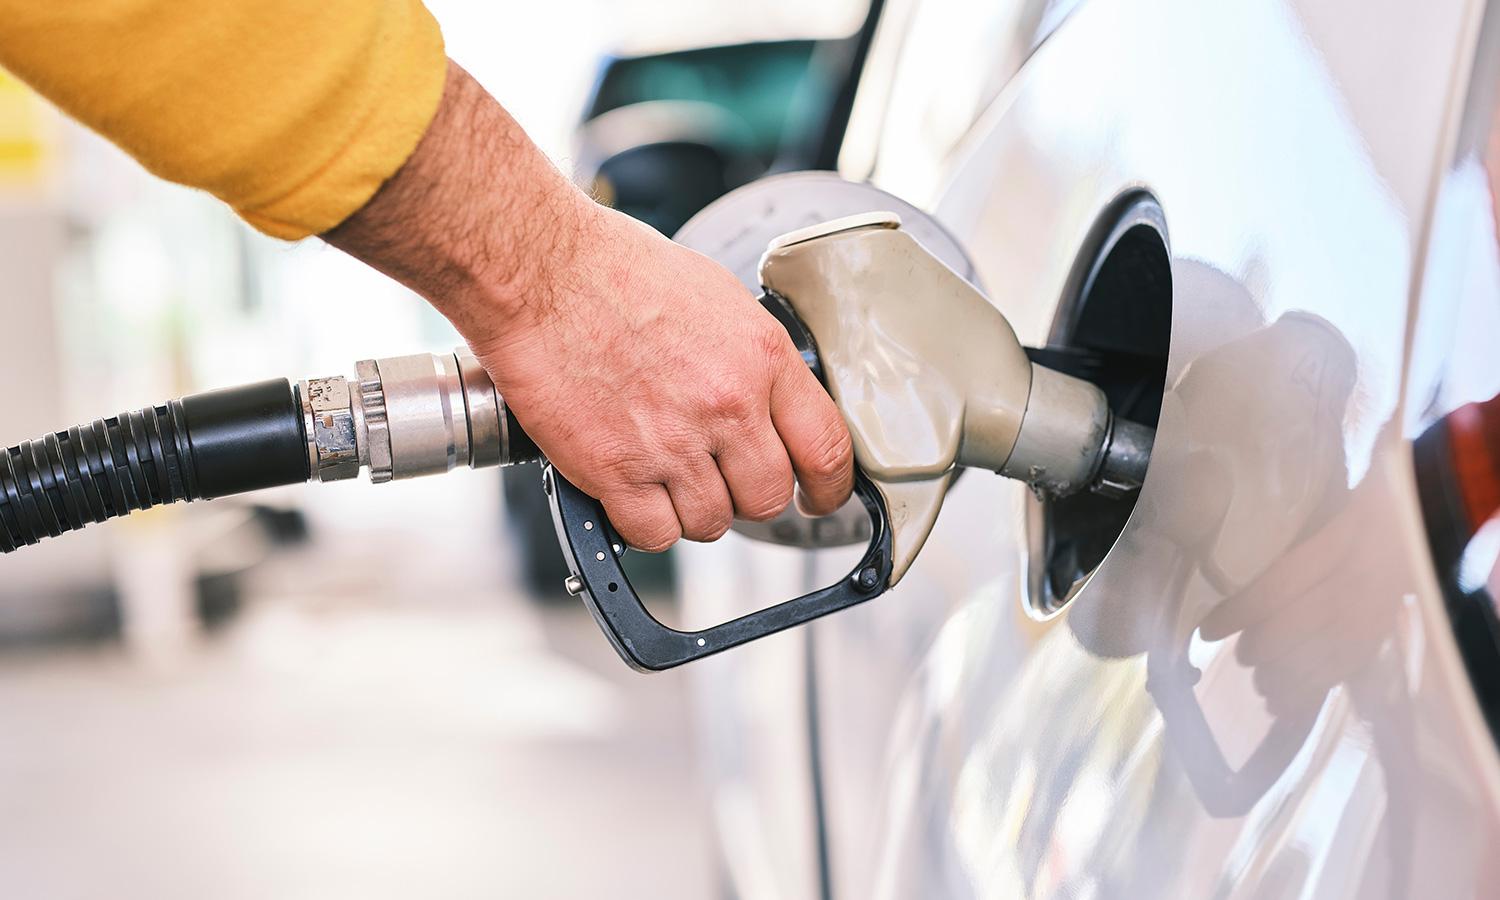 تعرف على أهم 7 نصائح لتحسين كفاءة استهلاك الوقود في سيارتك